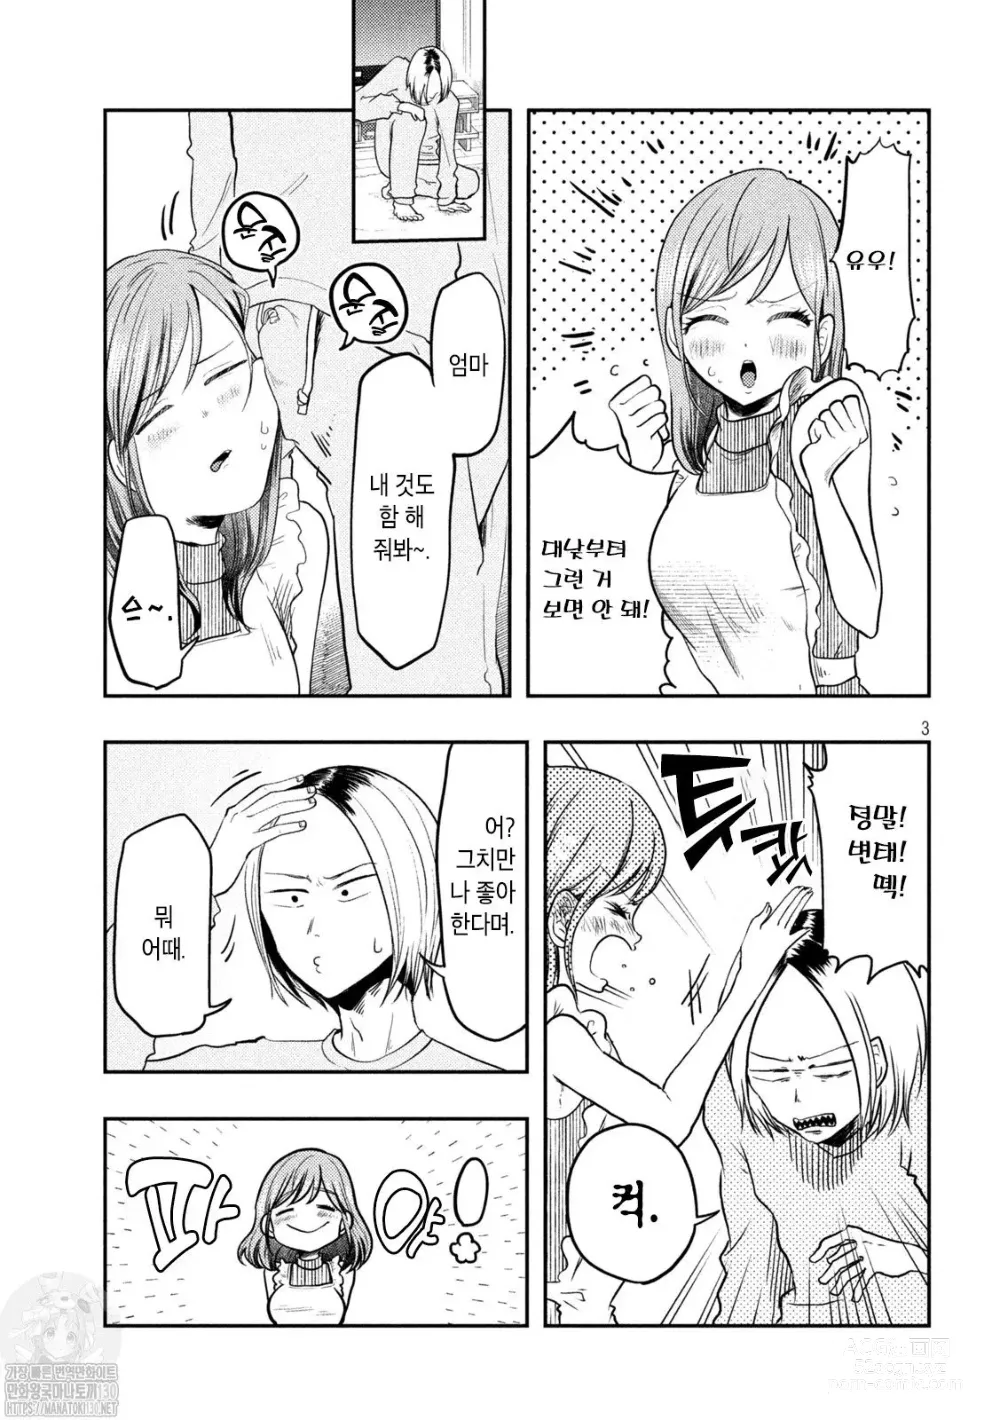 Page 3 of manga Haha wa Tsuyoi.